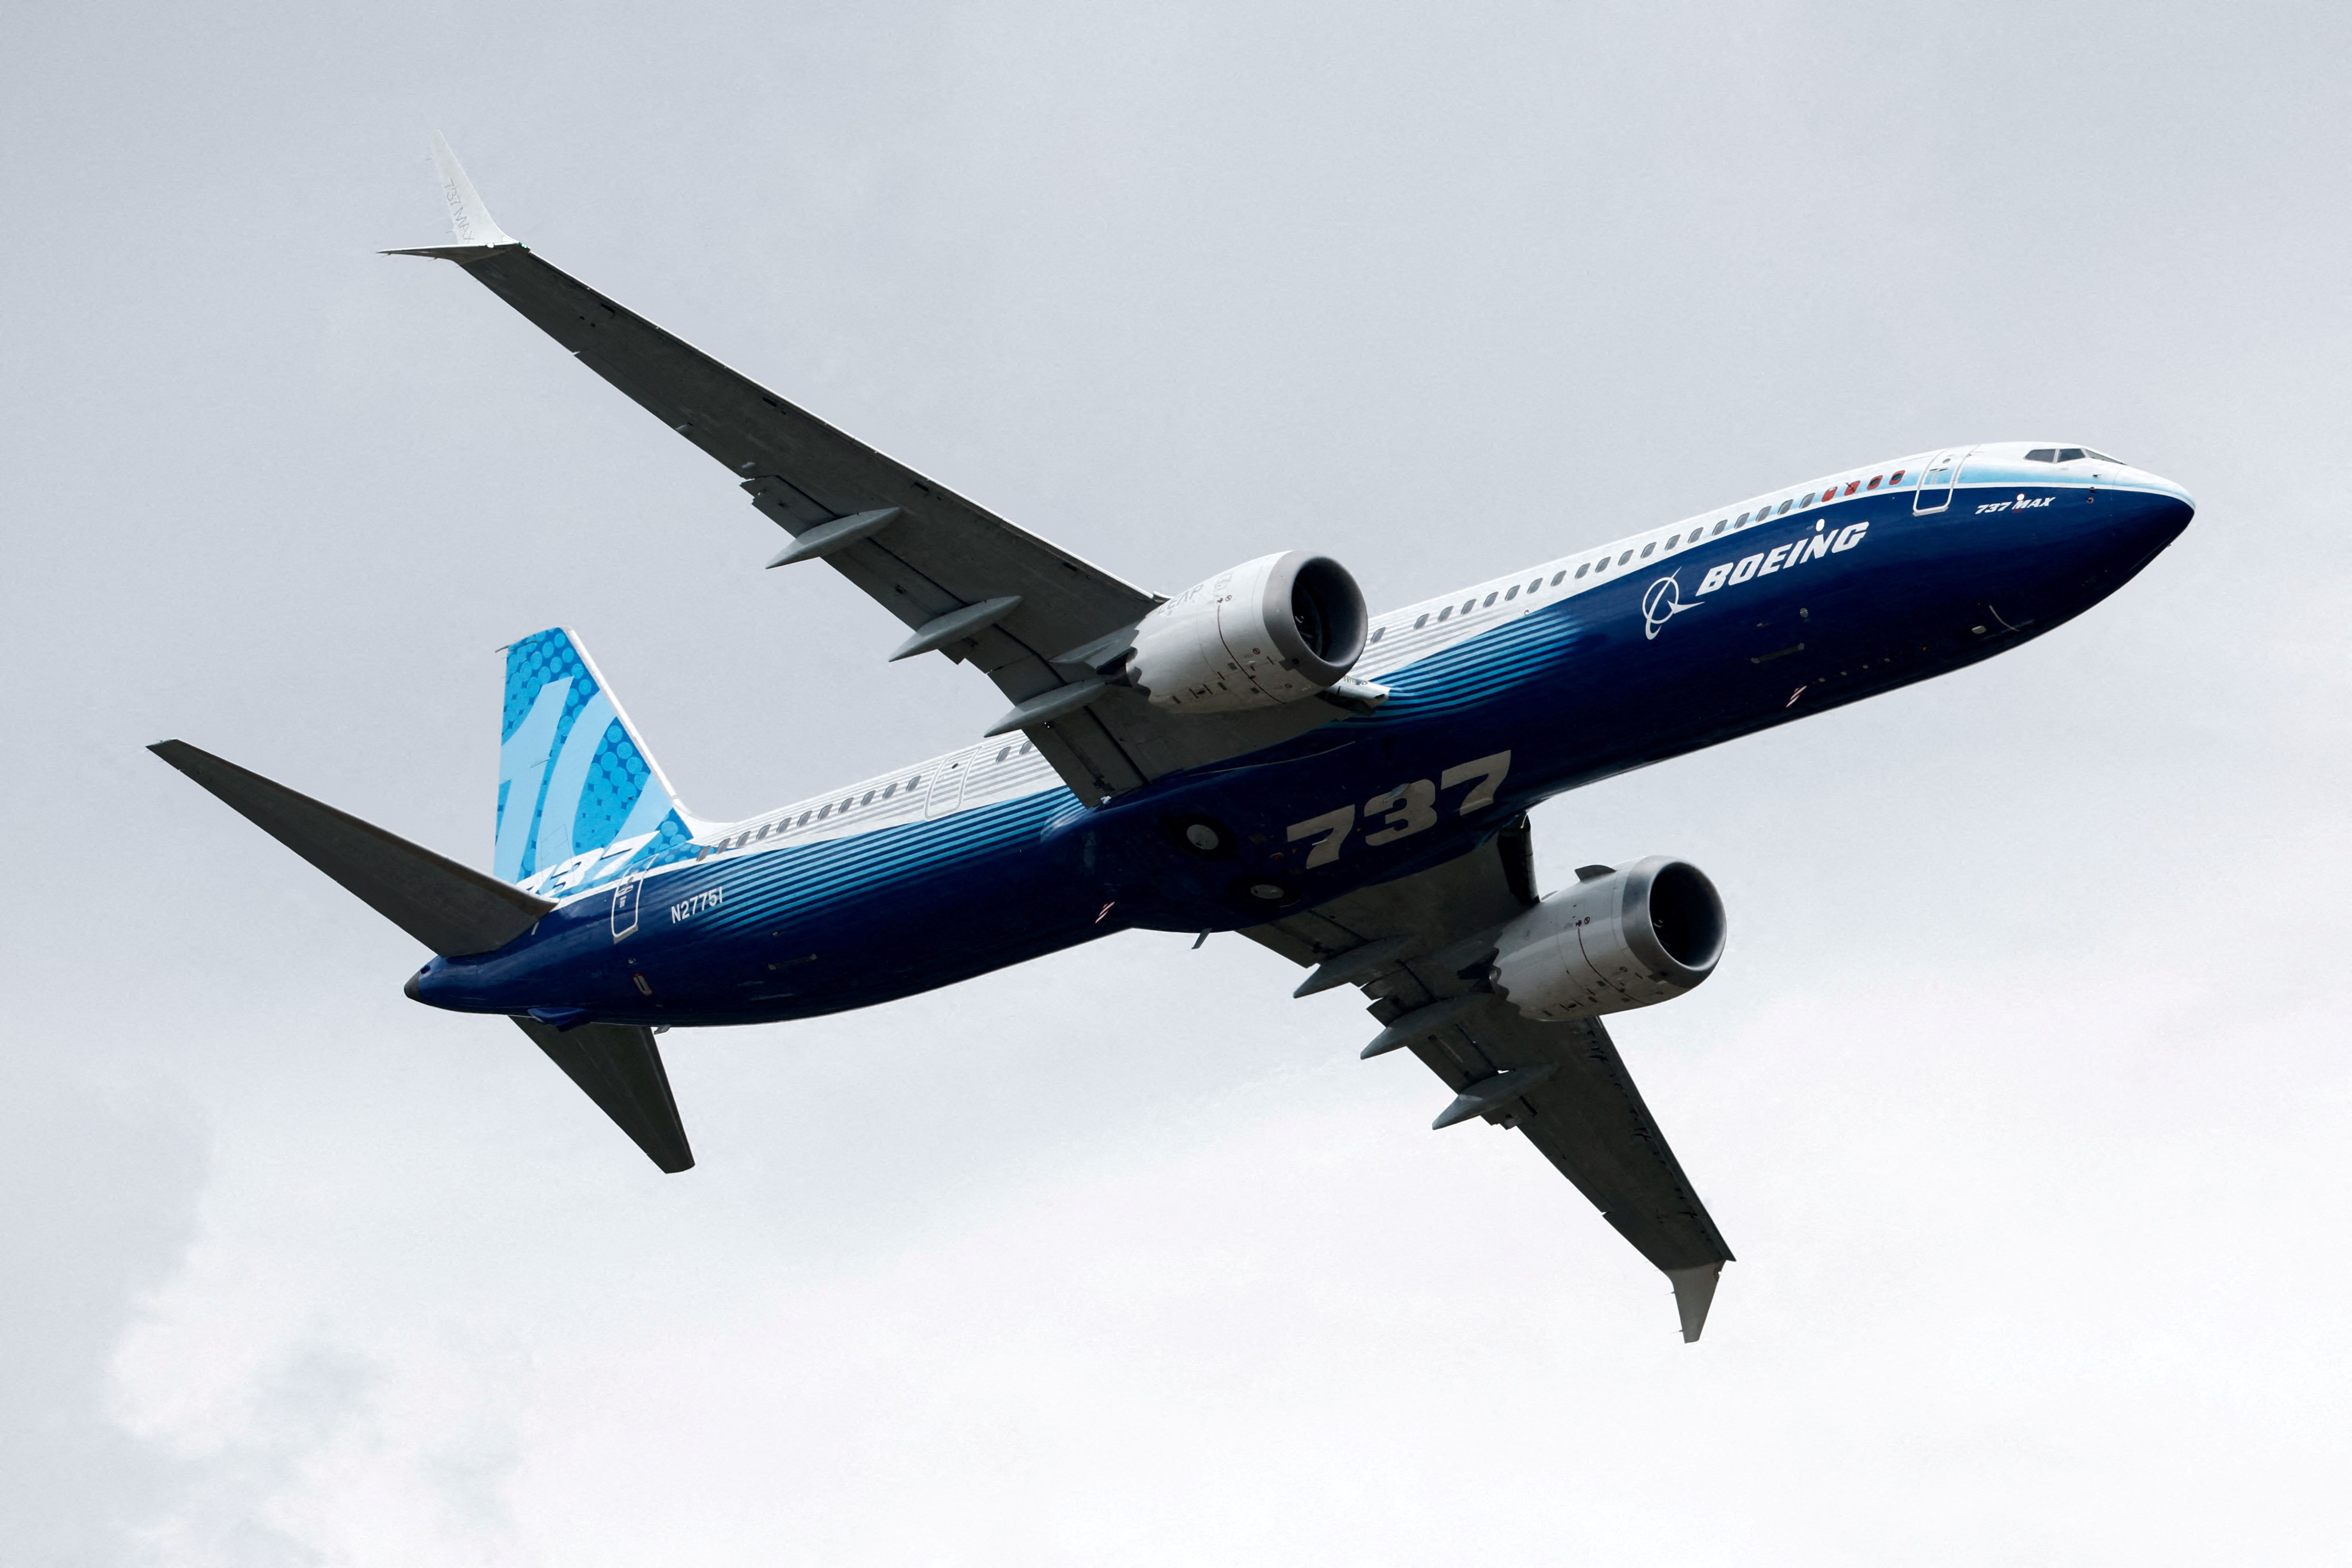 A Anac afirmou que o avião em questão não era usado no país, mas depois disse ter identificado que ele era sim utilizado em voos internacionais no aeroporto de Guarulhos (SP) pela Copa Airlines